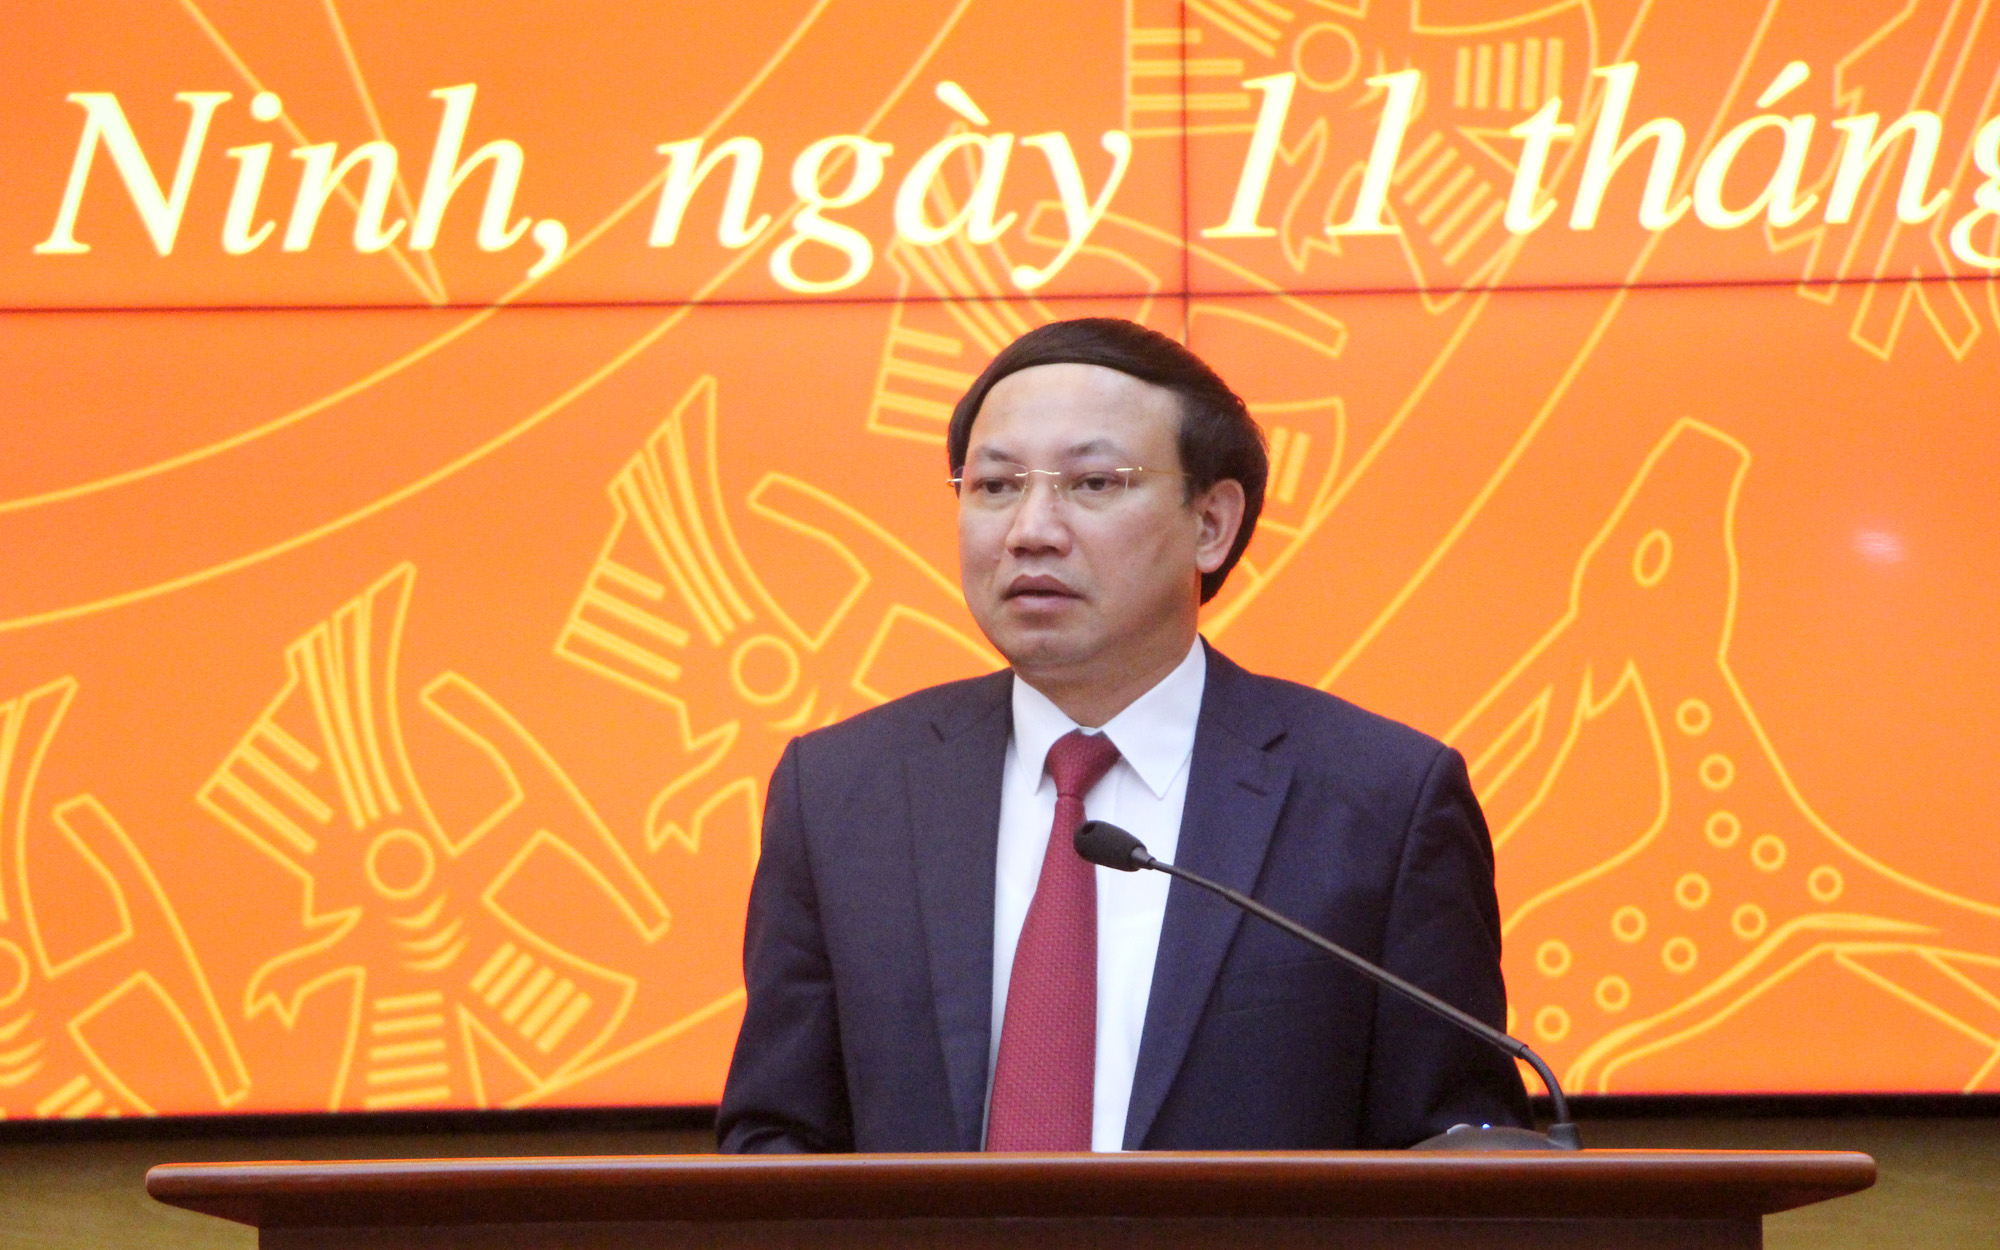 Đồng chí Nguyễn Xuân Ký, Bí thư Tỉnh ủy, Chủ tịch HĐND tỉnh, kết luận hội nghị,